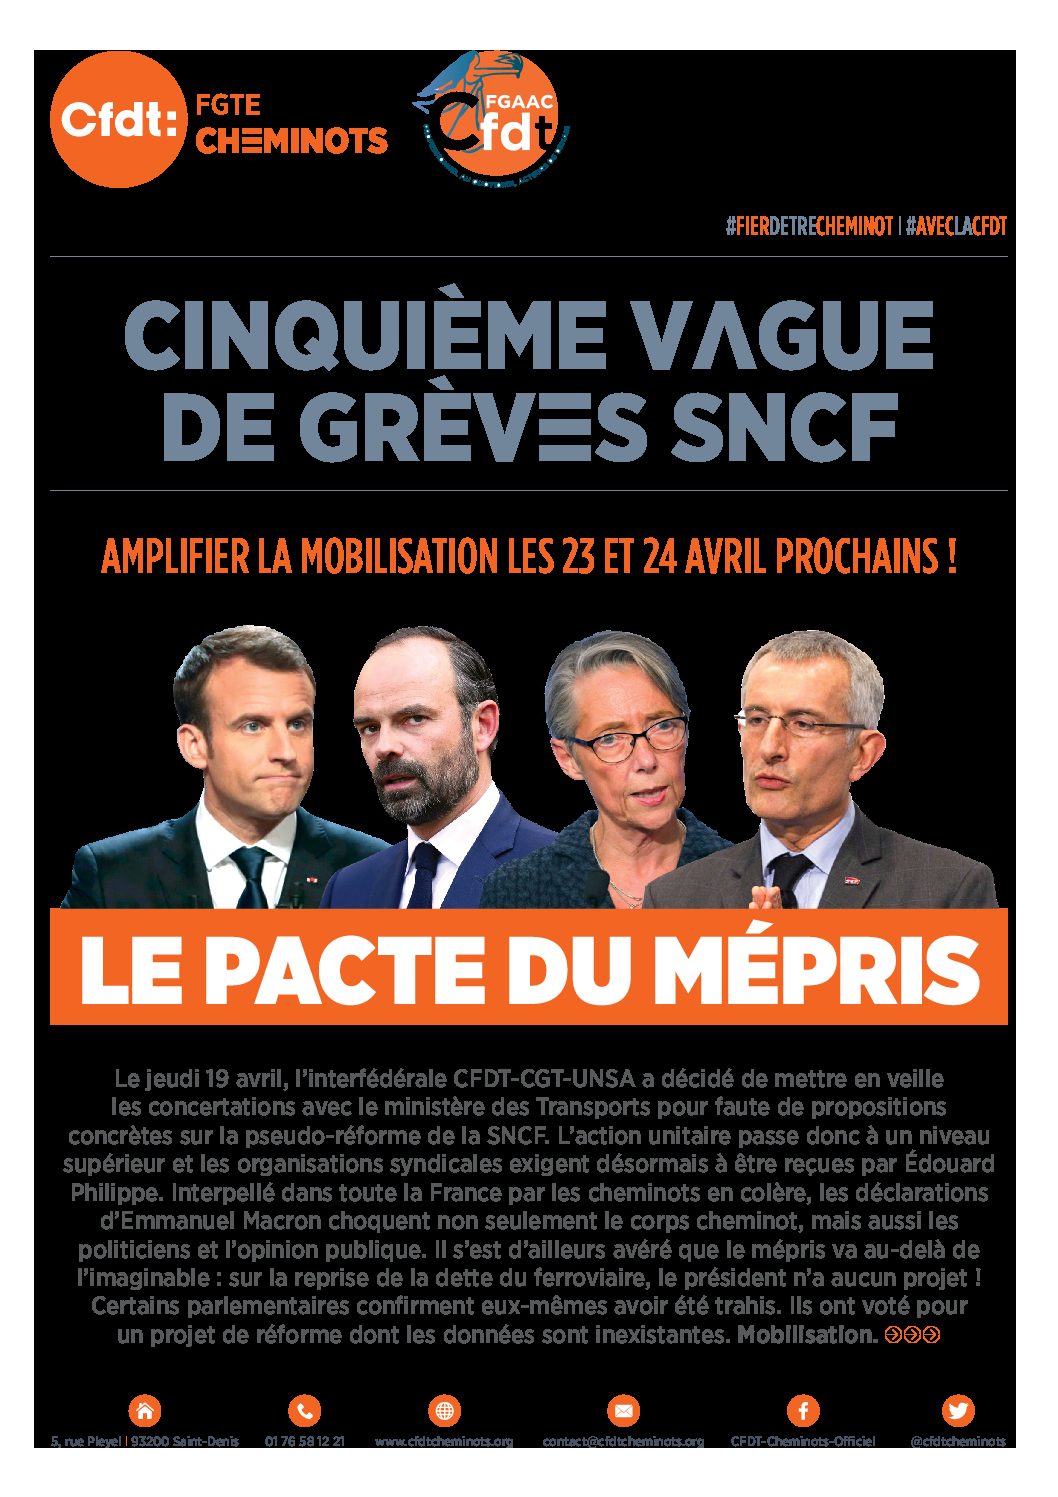 CINQUIÈME VAGUE DE GRÈVES SNCF